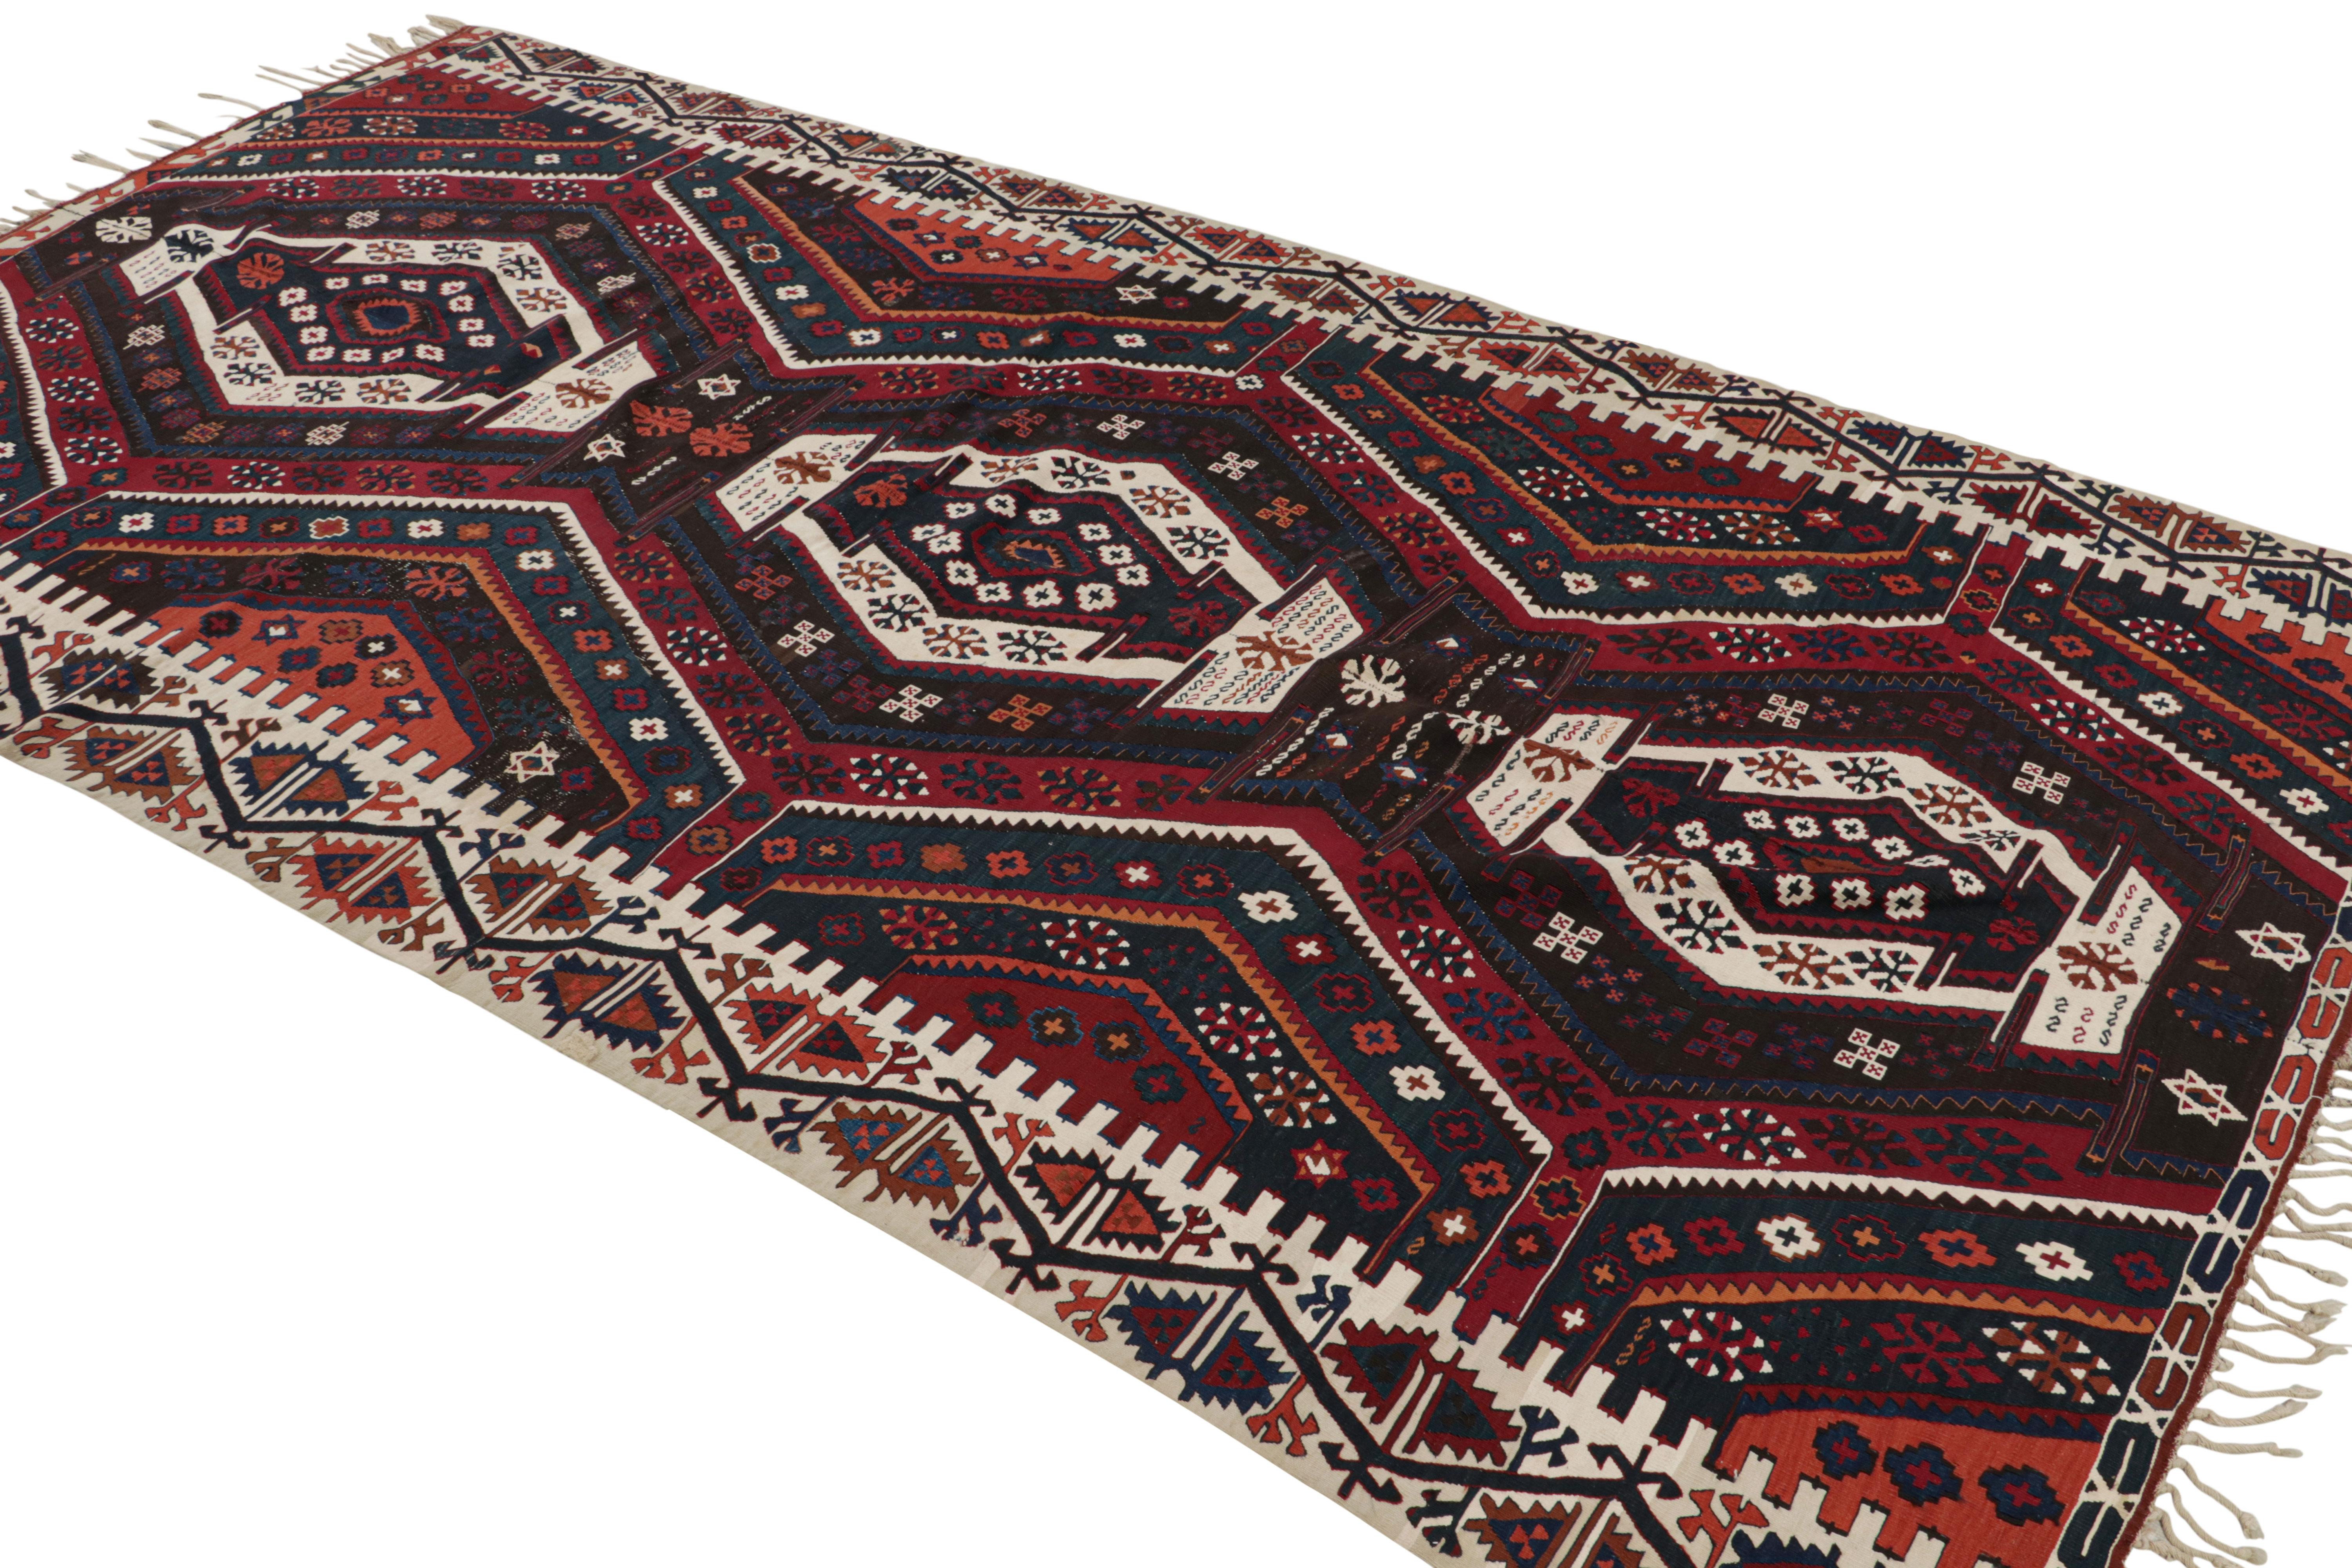 Dieser handgewebte türkische Kelim im Format 6x12 zeigt polychromatische, geometrische Muster auf einem burgunderroten Feld. 

Über das Design: 

Kenner werden dieses persönliche Vintage-Stück bewundern, das die Blicke auf sich zieht und doch so